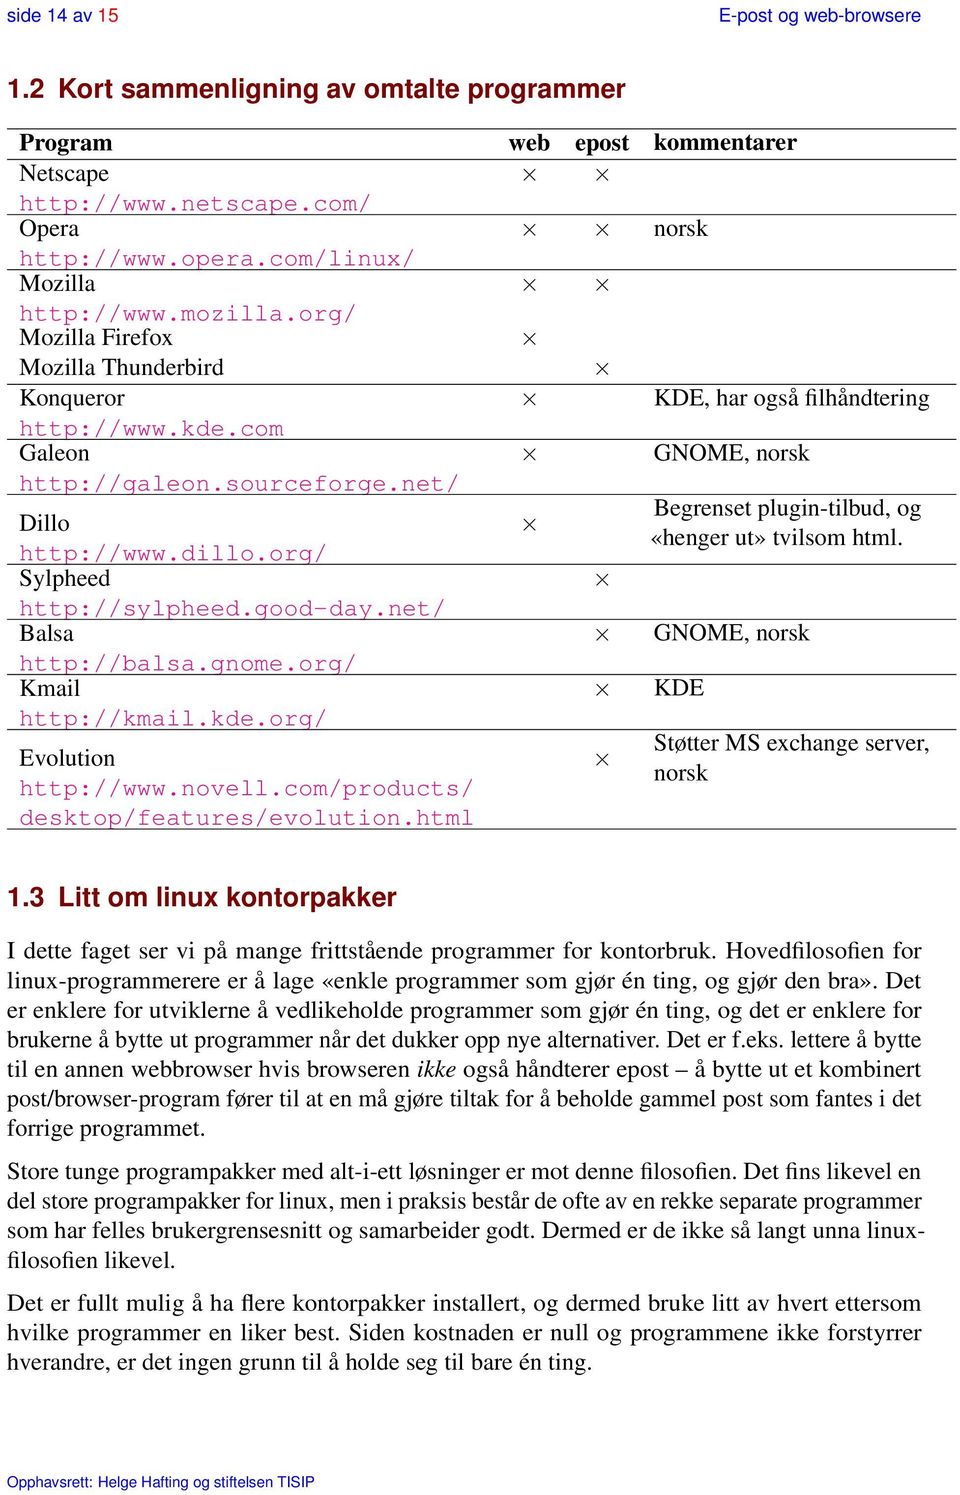 net/ Begrenset plugin-tilbud, og Dillo «henger ut» tvilsom html. http://www.dillo.org/ Sylpheed http://sylpheed.good-day.net/ Balsa GNOME, norsk http://balsa.gnome.org/ Kmail http://kmail.kde.